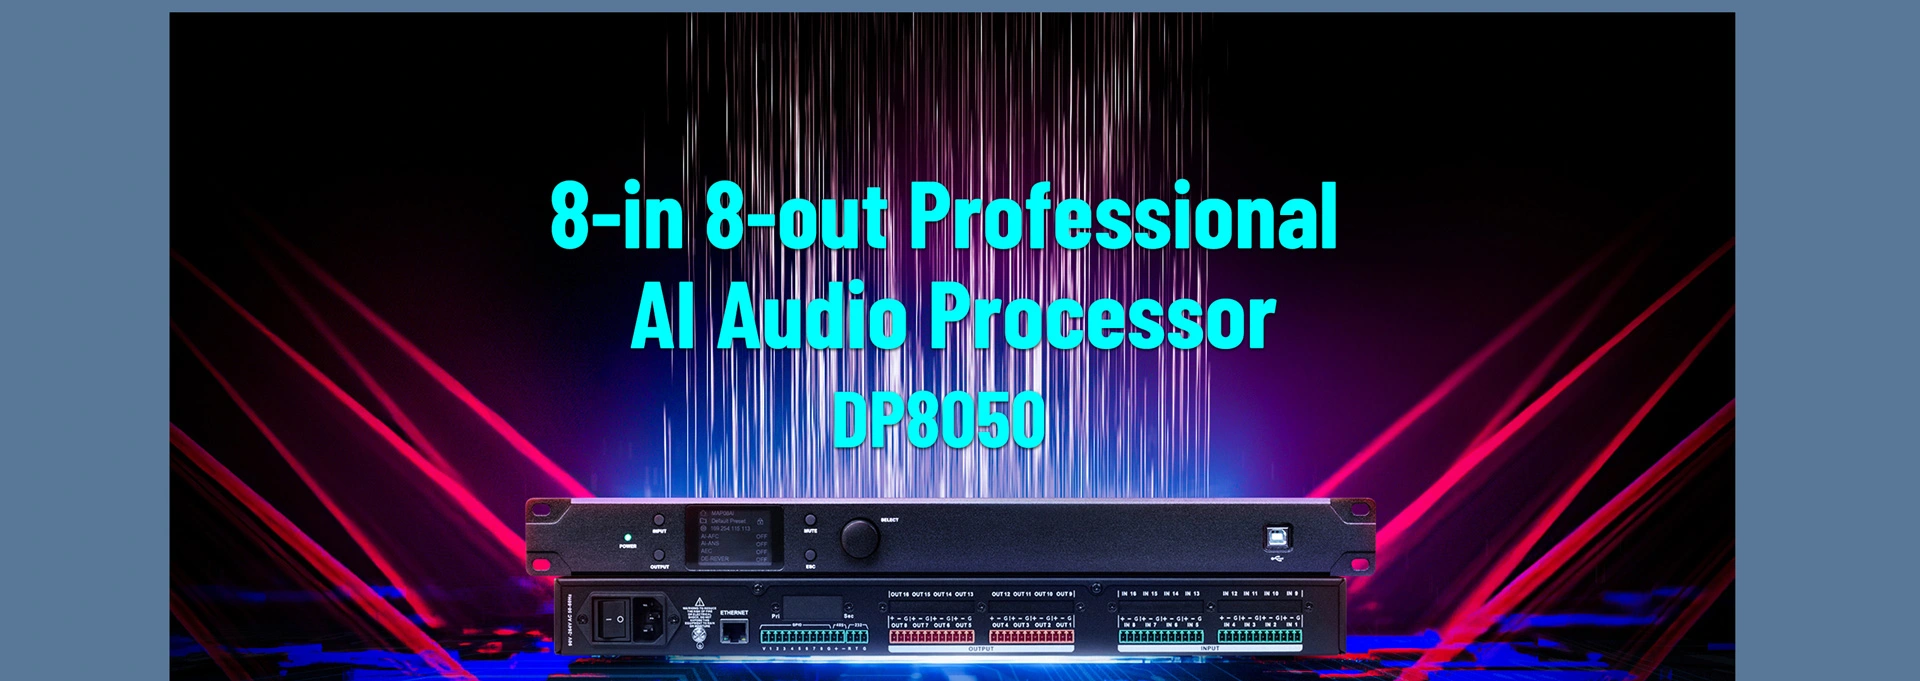 Procesador de audio profesional 8 en 8